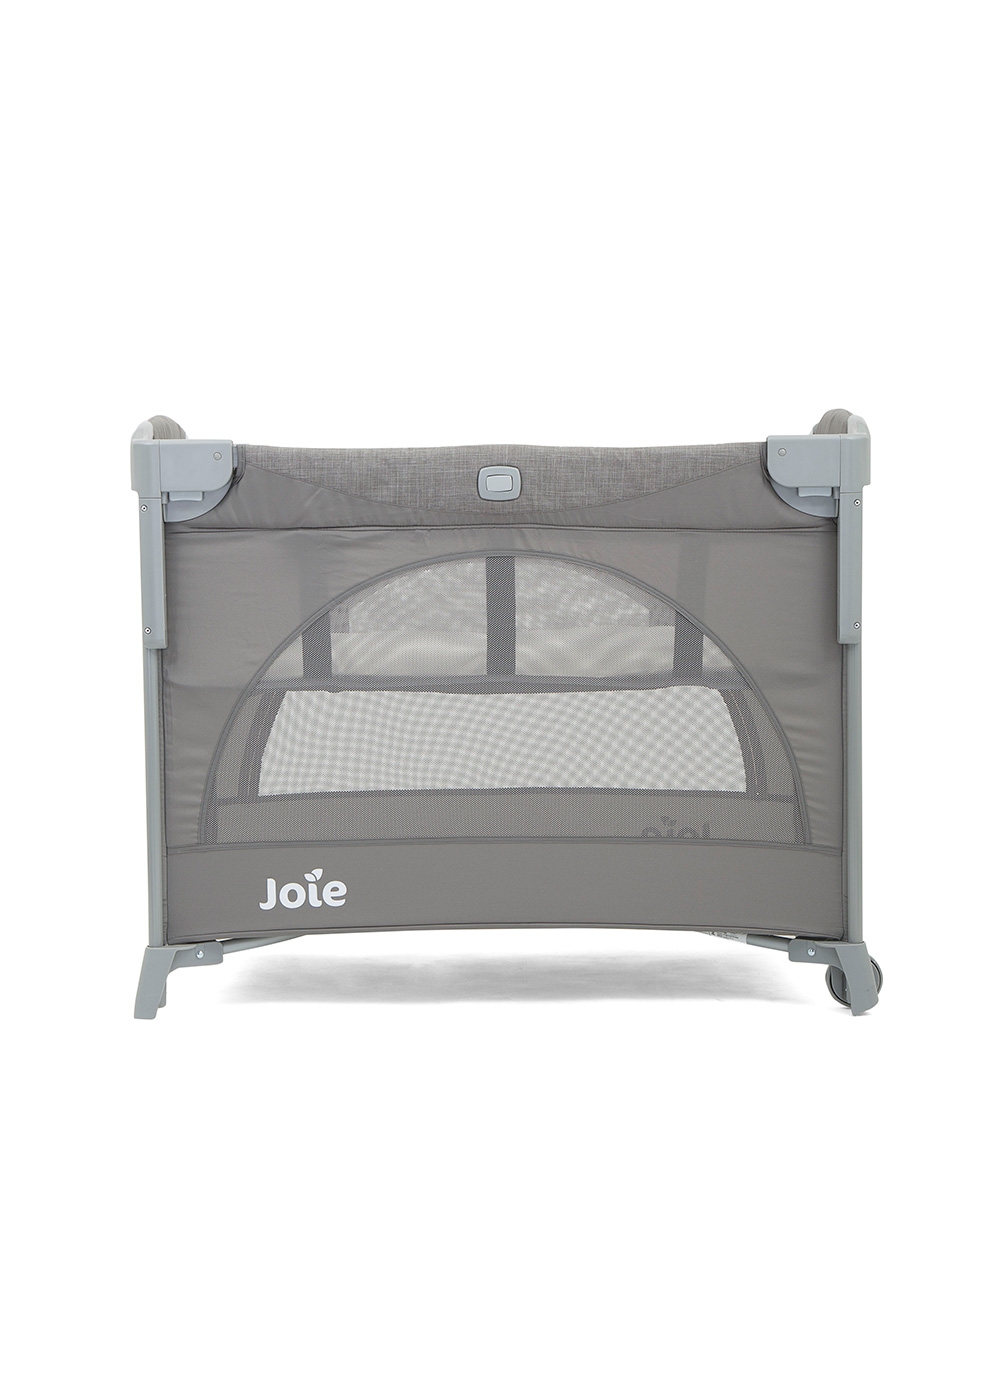 Joie - Patut pliant pentru cosleeping Kubbie Foggy Gray image 1